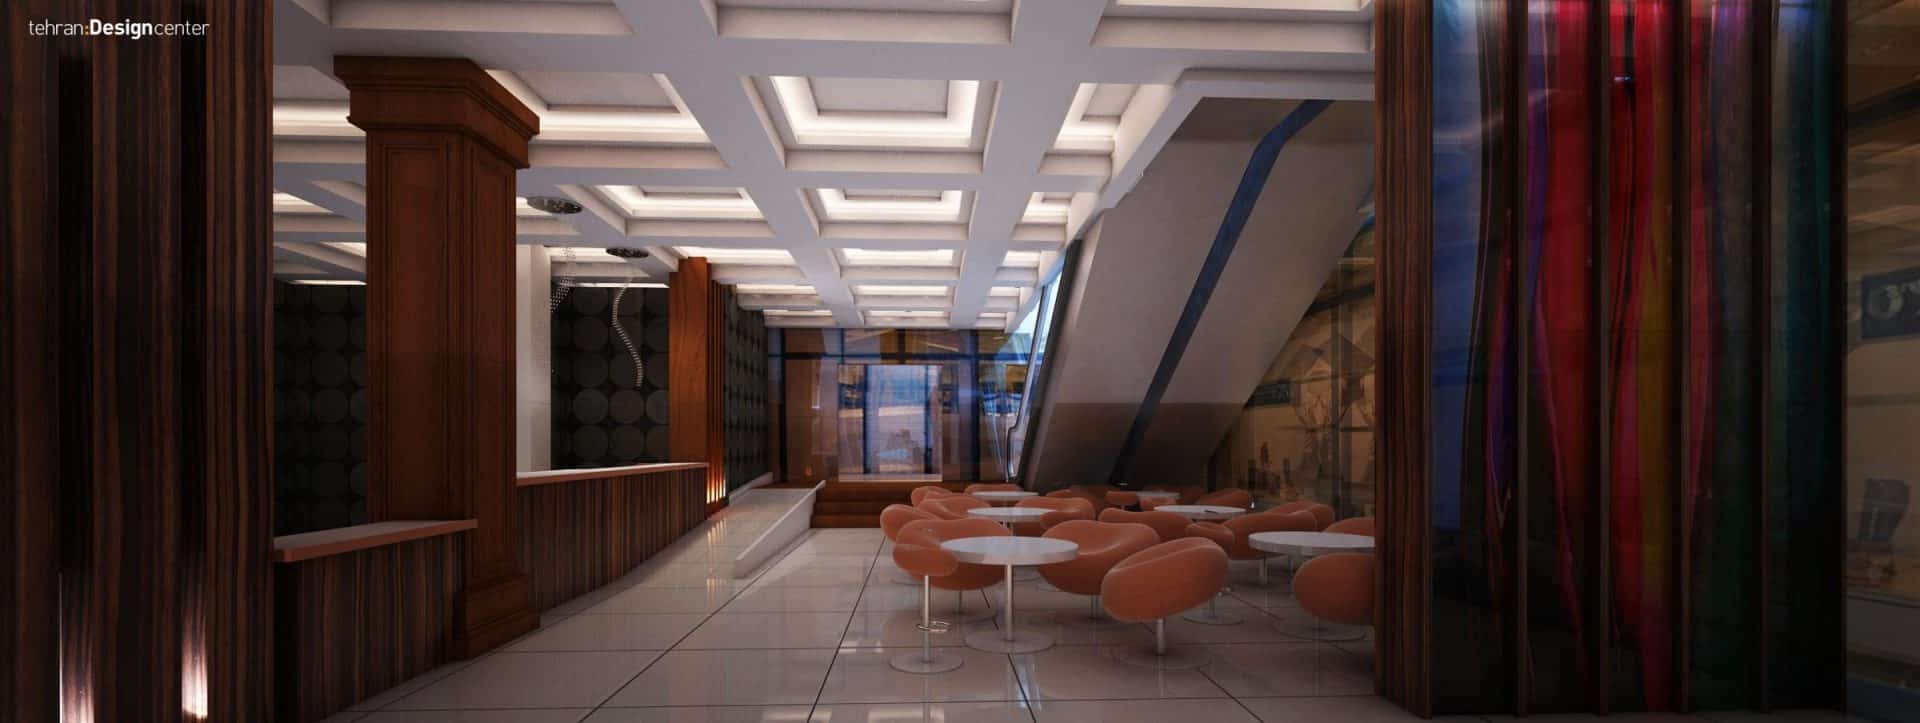 طراحی فضای انتظار هتل | شرکت معماری داخلی و دکوراسیون تهران دیزاین سنتر